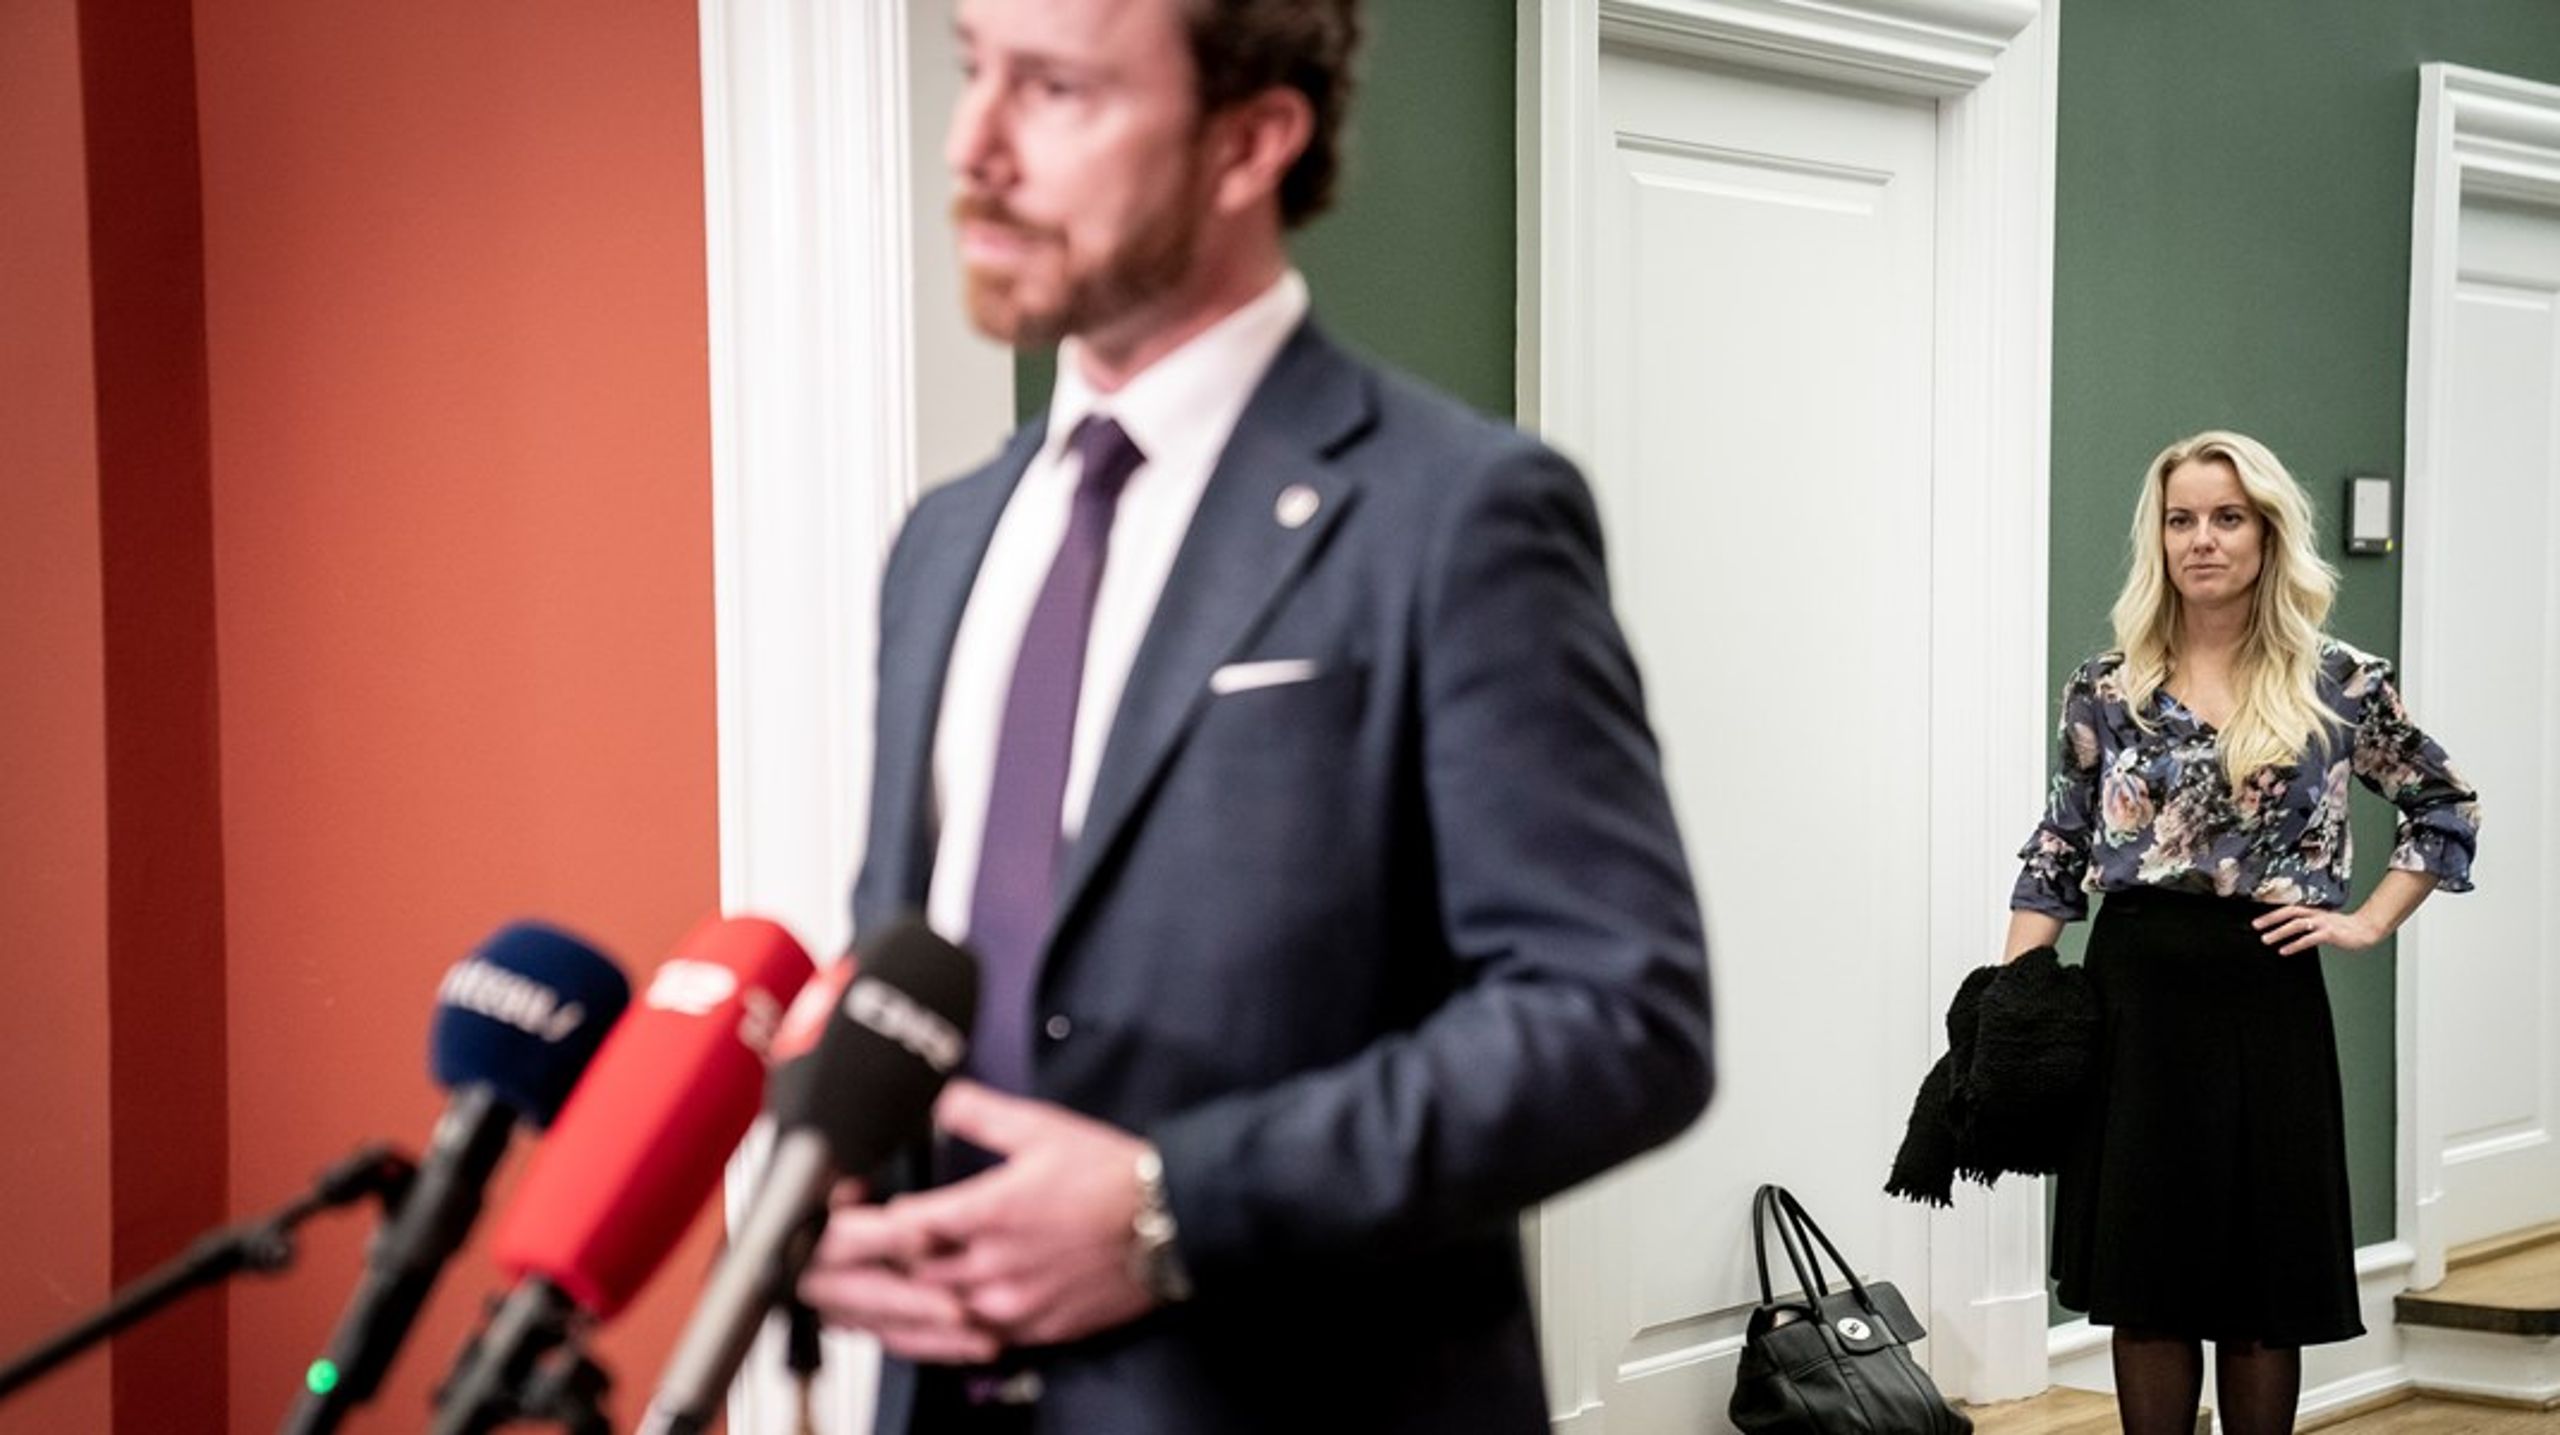 Det er, som om Venstre har fået angst for at tale om udlændinge- og værdipolitik efter Inger Støjbergs exit, skriver Ali Aminali.